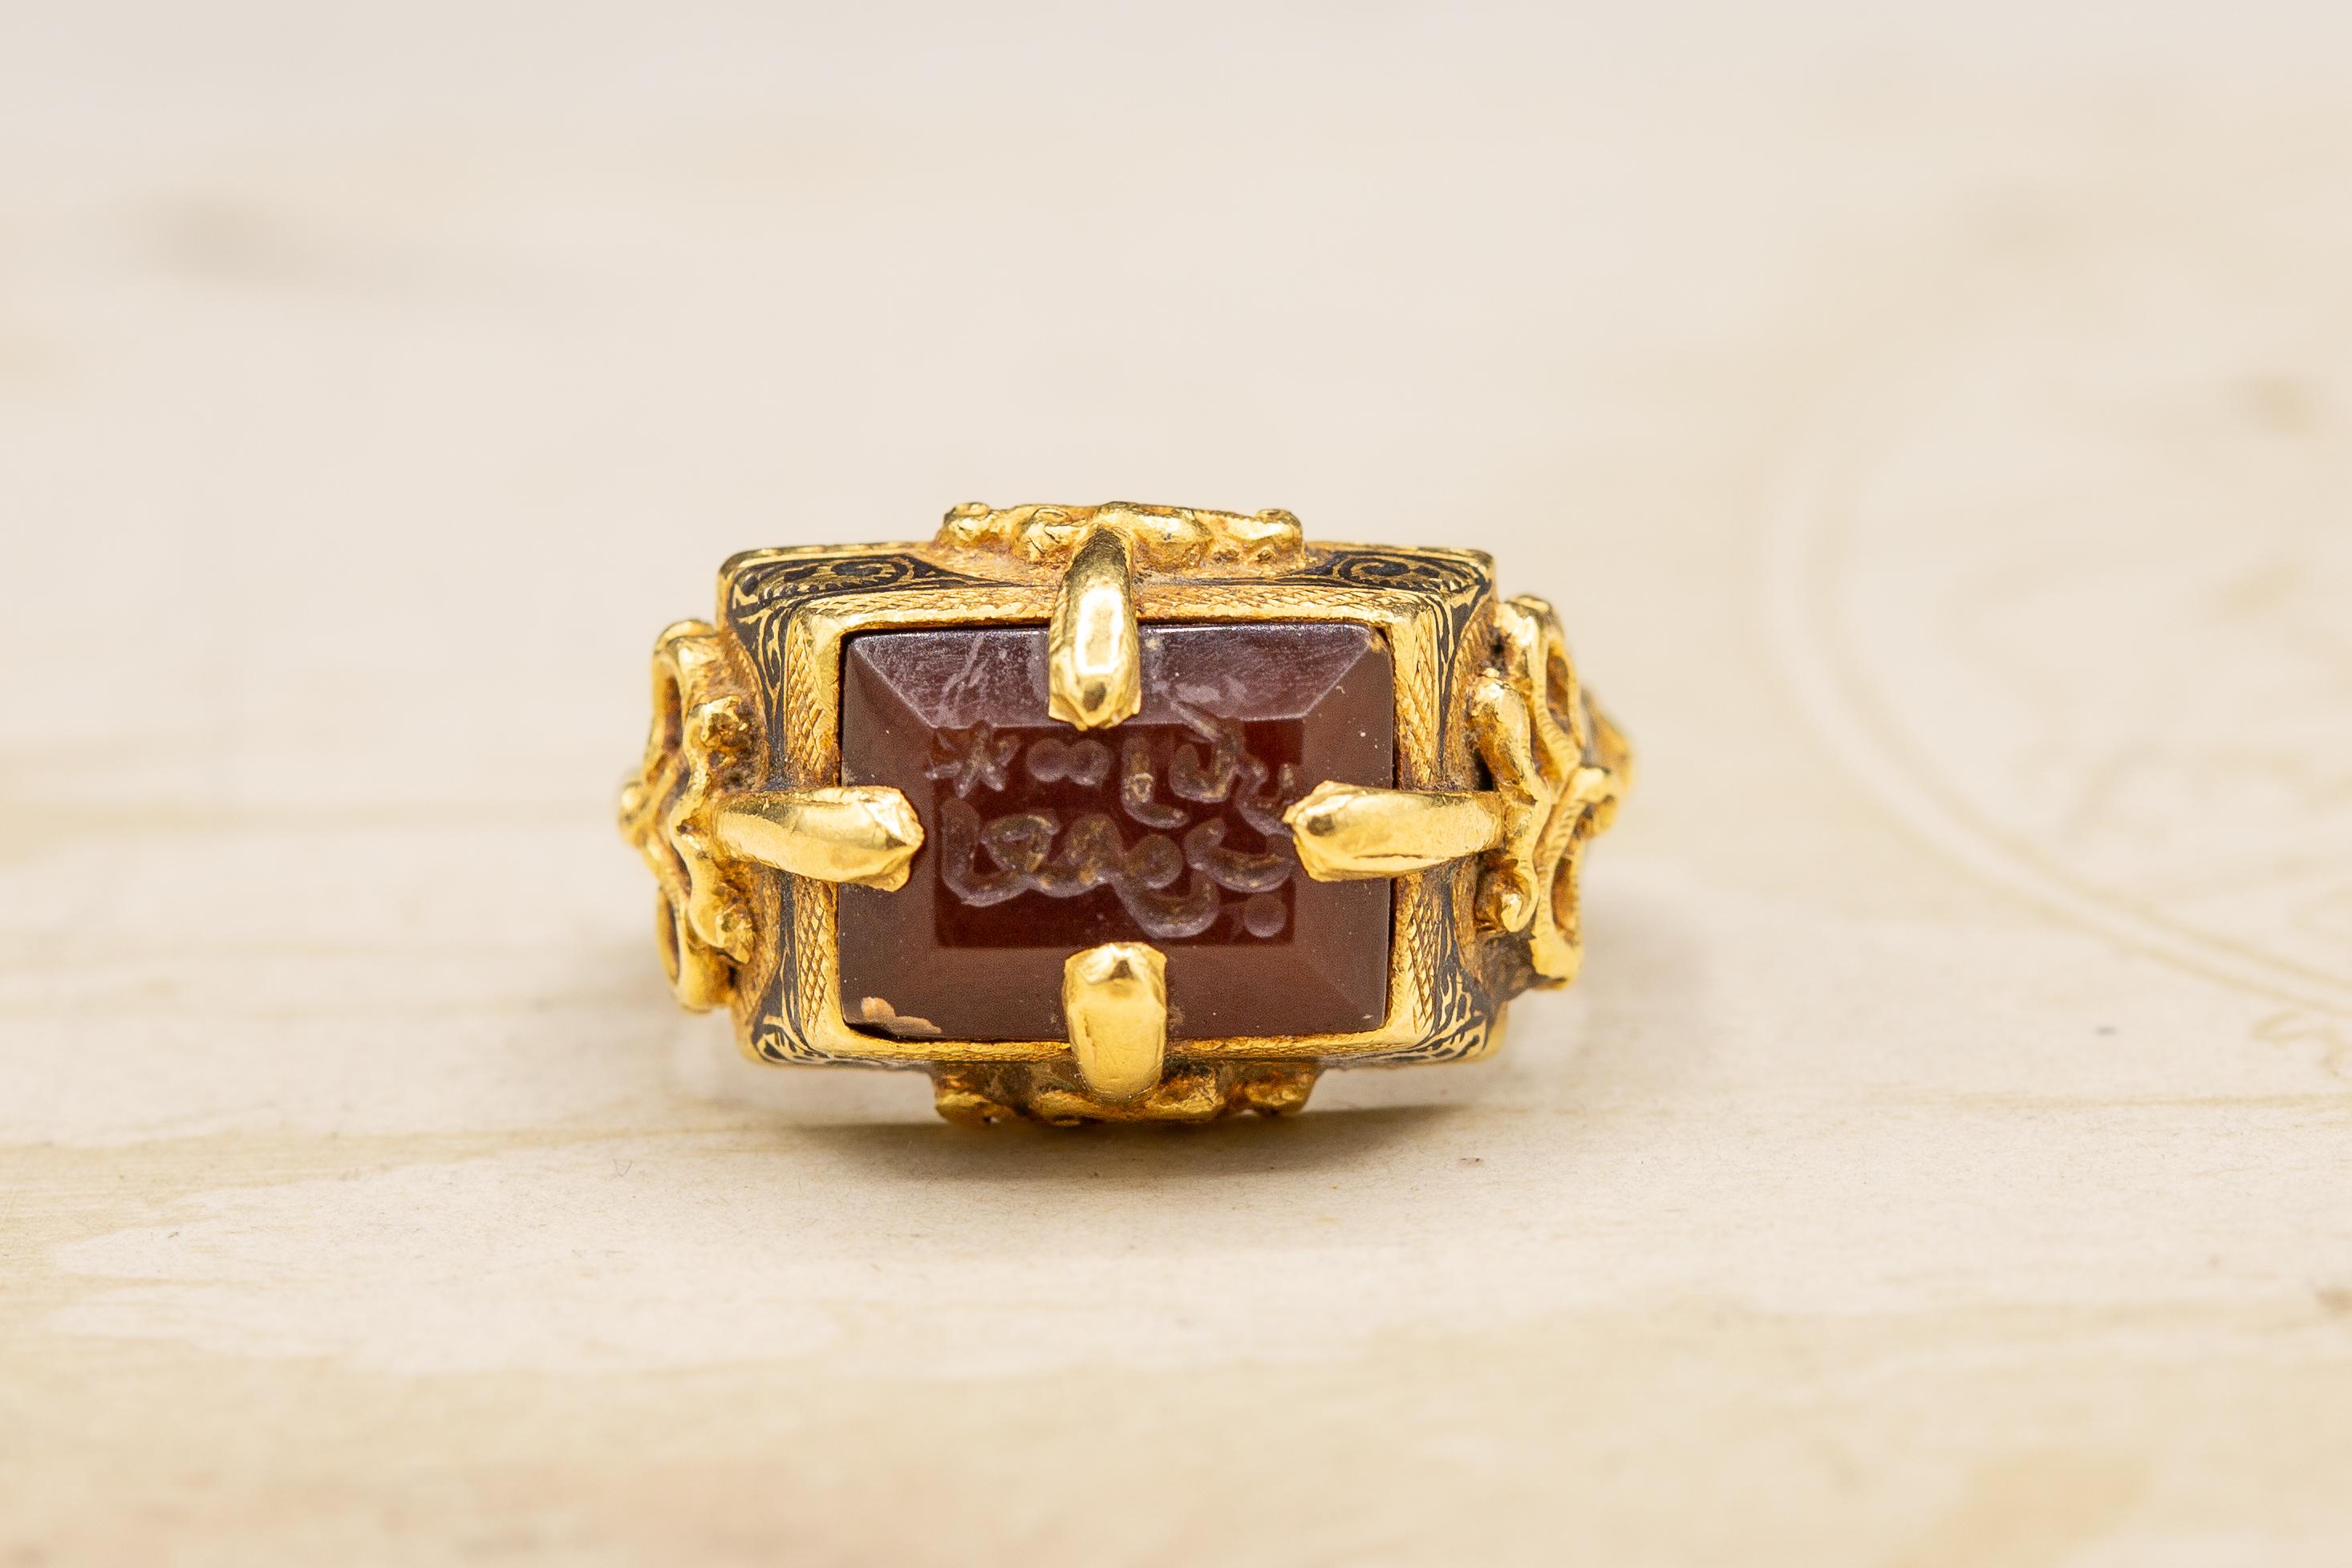 Dieser unglaubliche Goldring stammt aus dem 12. Jahrhundert aus der Seldschuken-Dynastie. Das Karneol-Intaglio ist in eine typisch seldschukische, sich verjüngende, rechteckige Lünette mit einer vierzackigen Goldfassung eingelassen, die an der